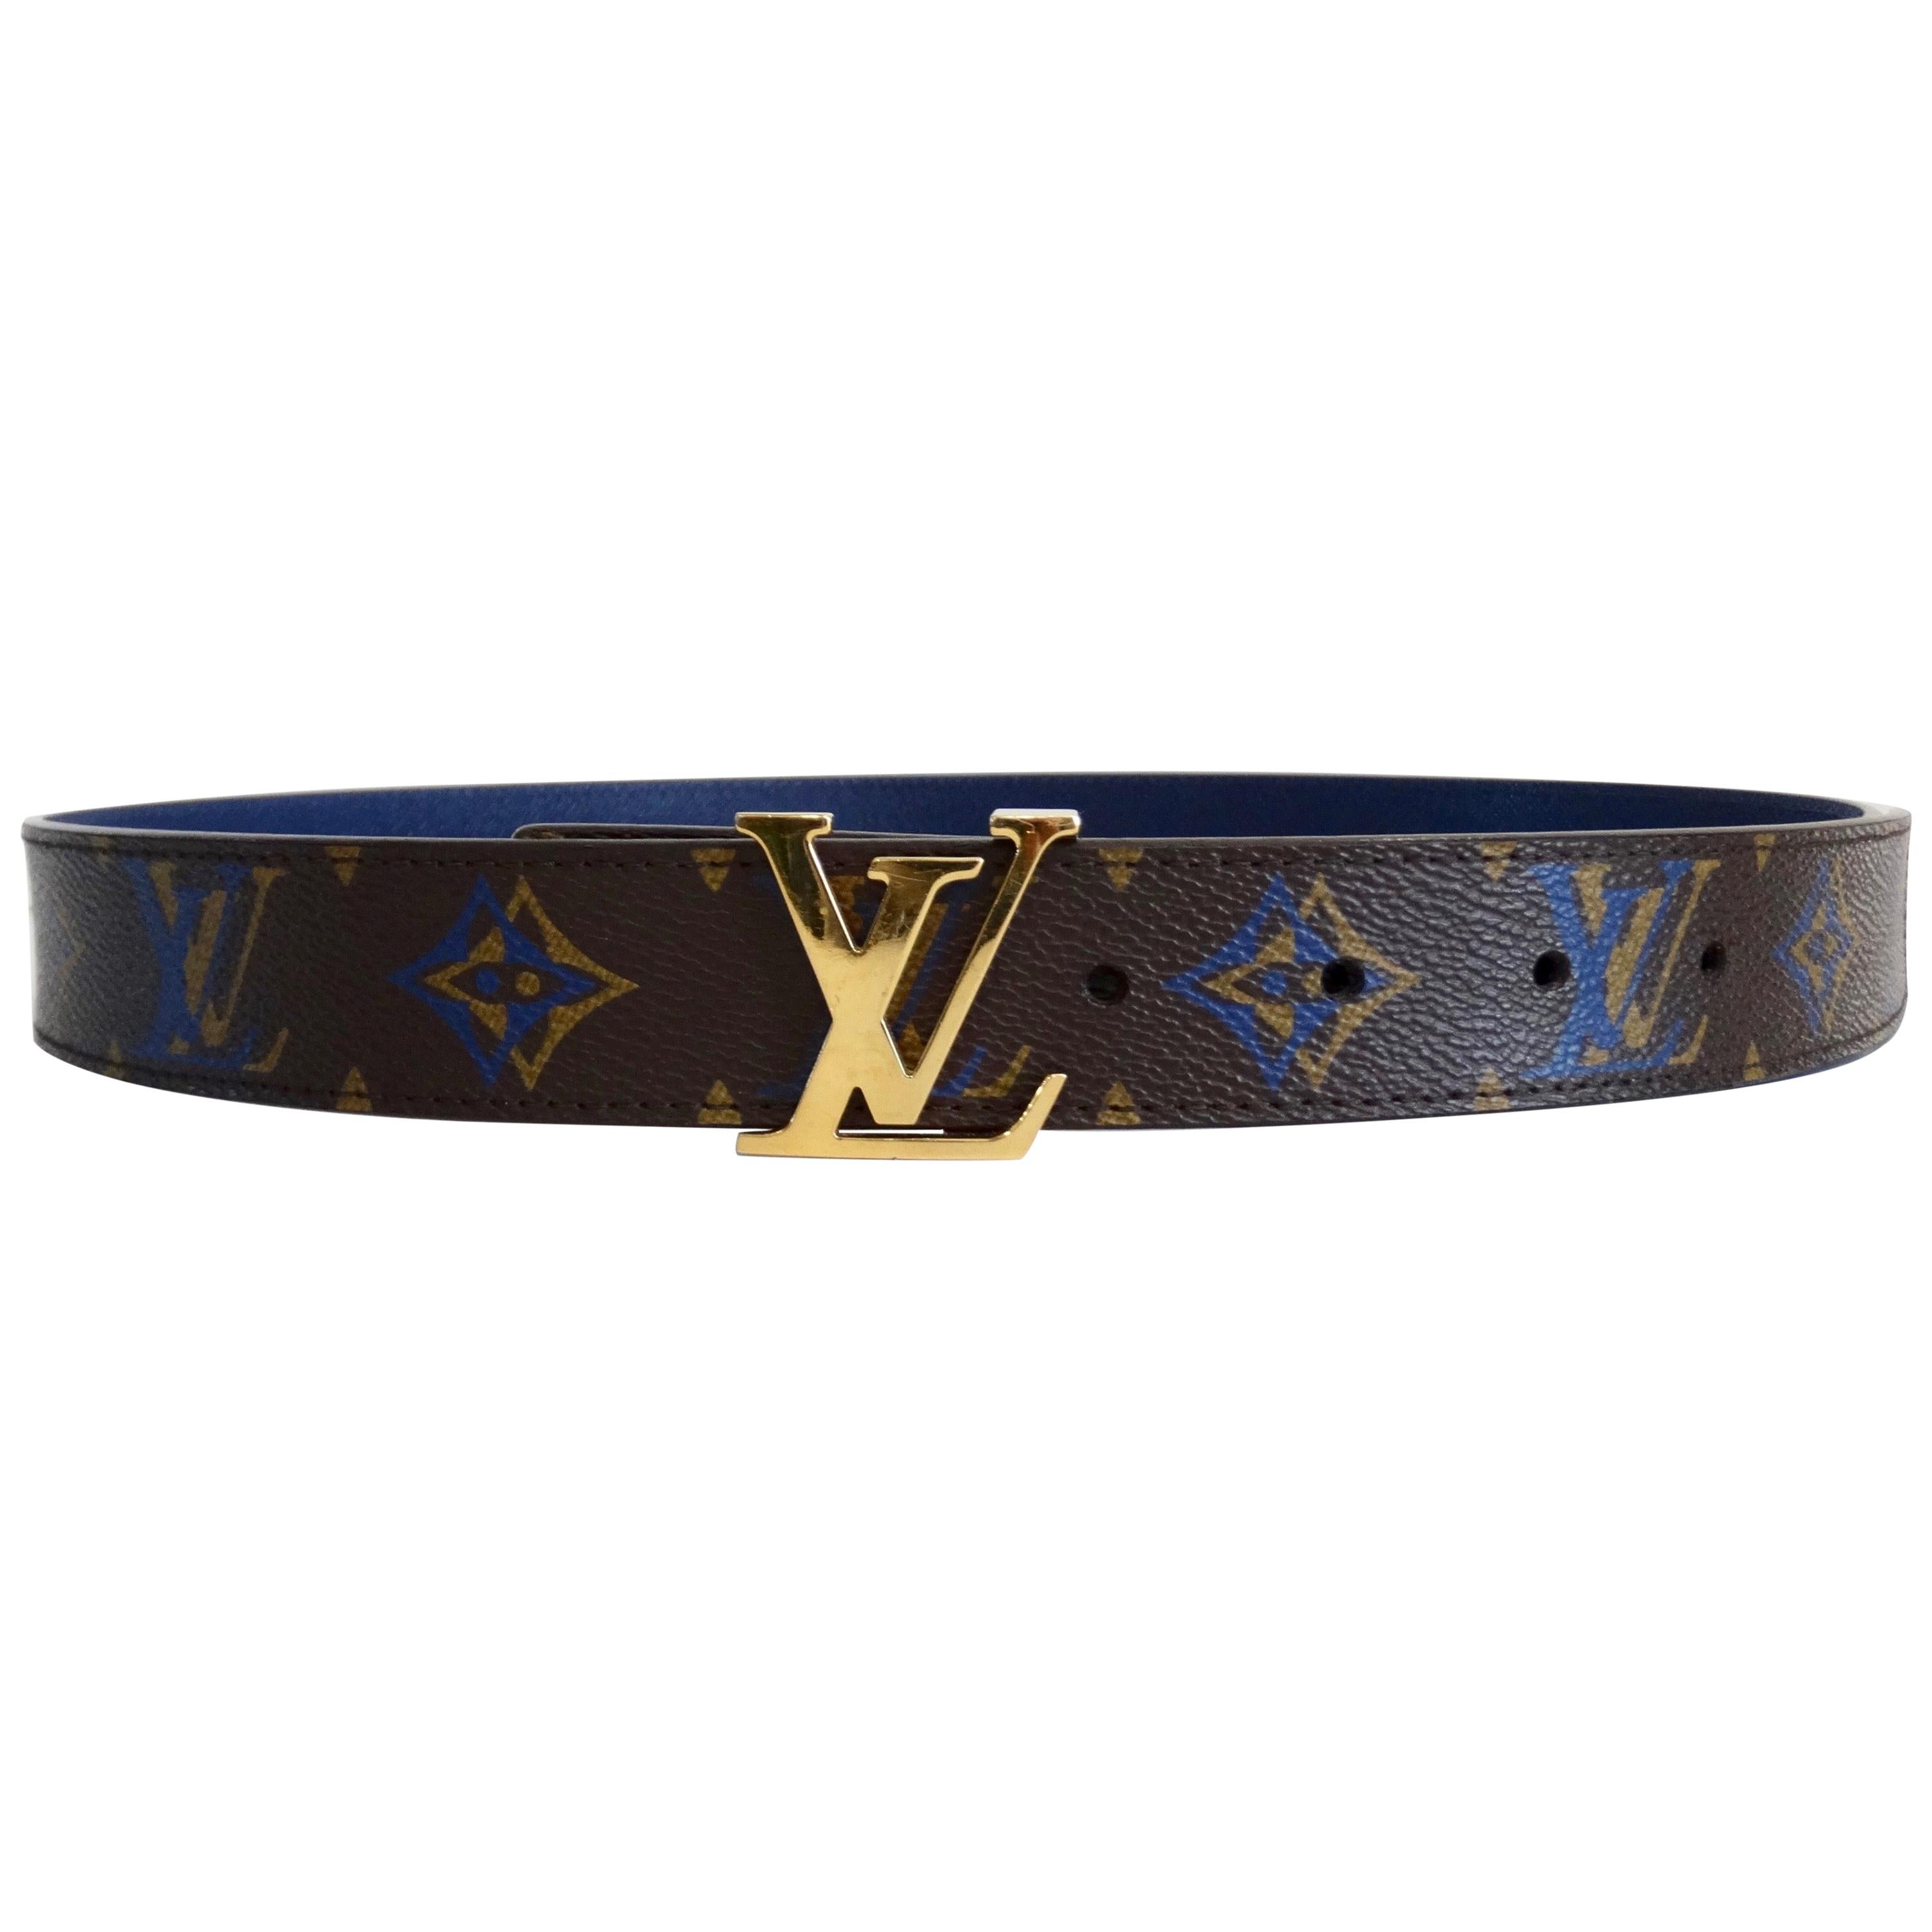 Louis Vuitton 2013 Inventeur Waist Belt - Grey Belts, Accessories